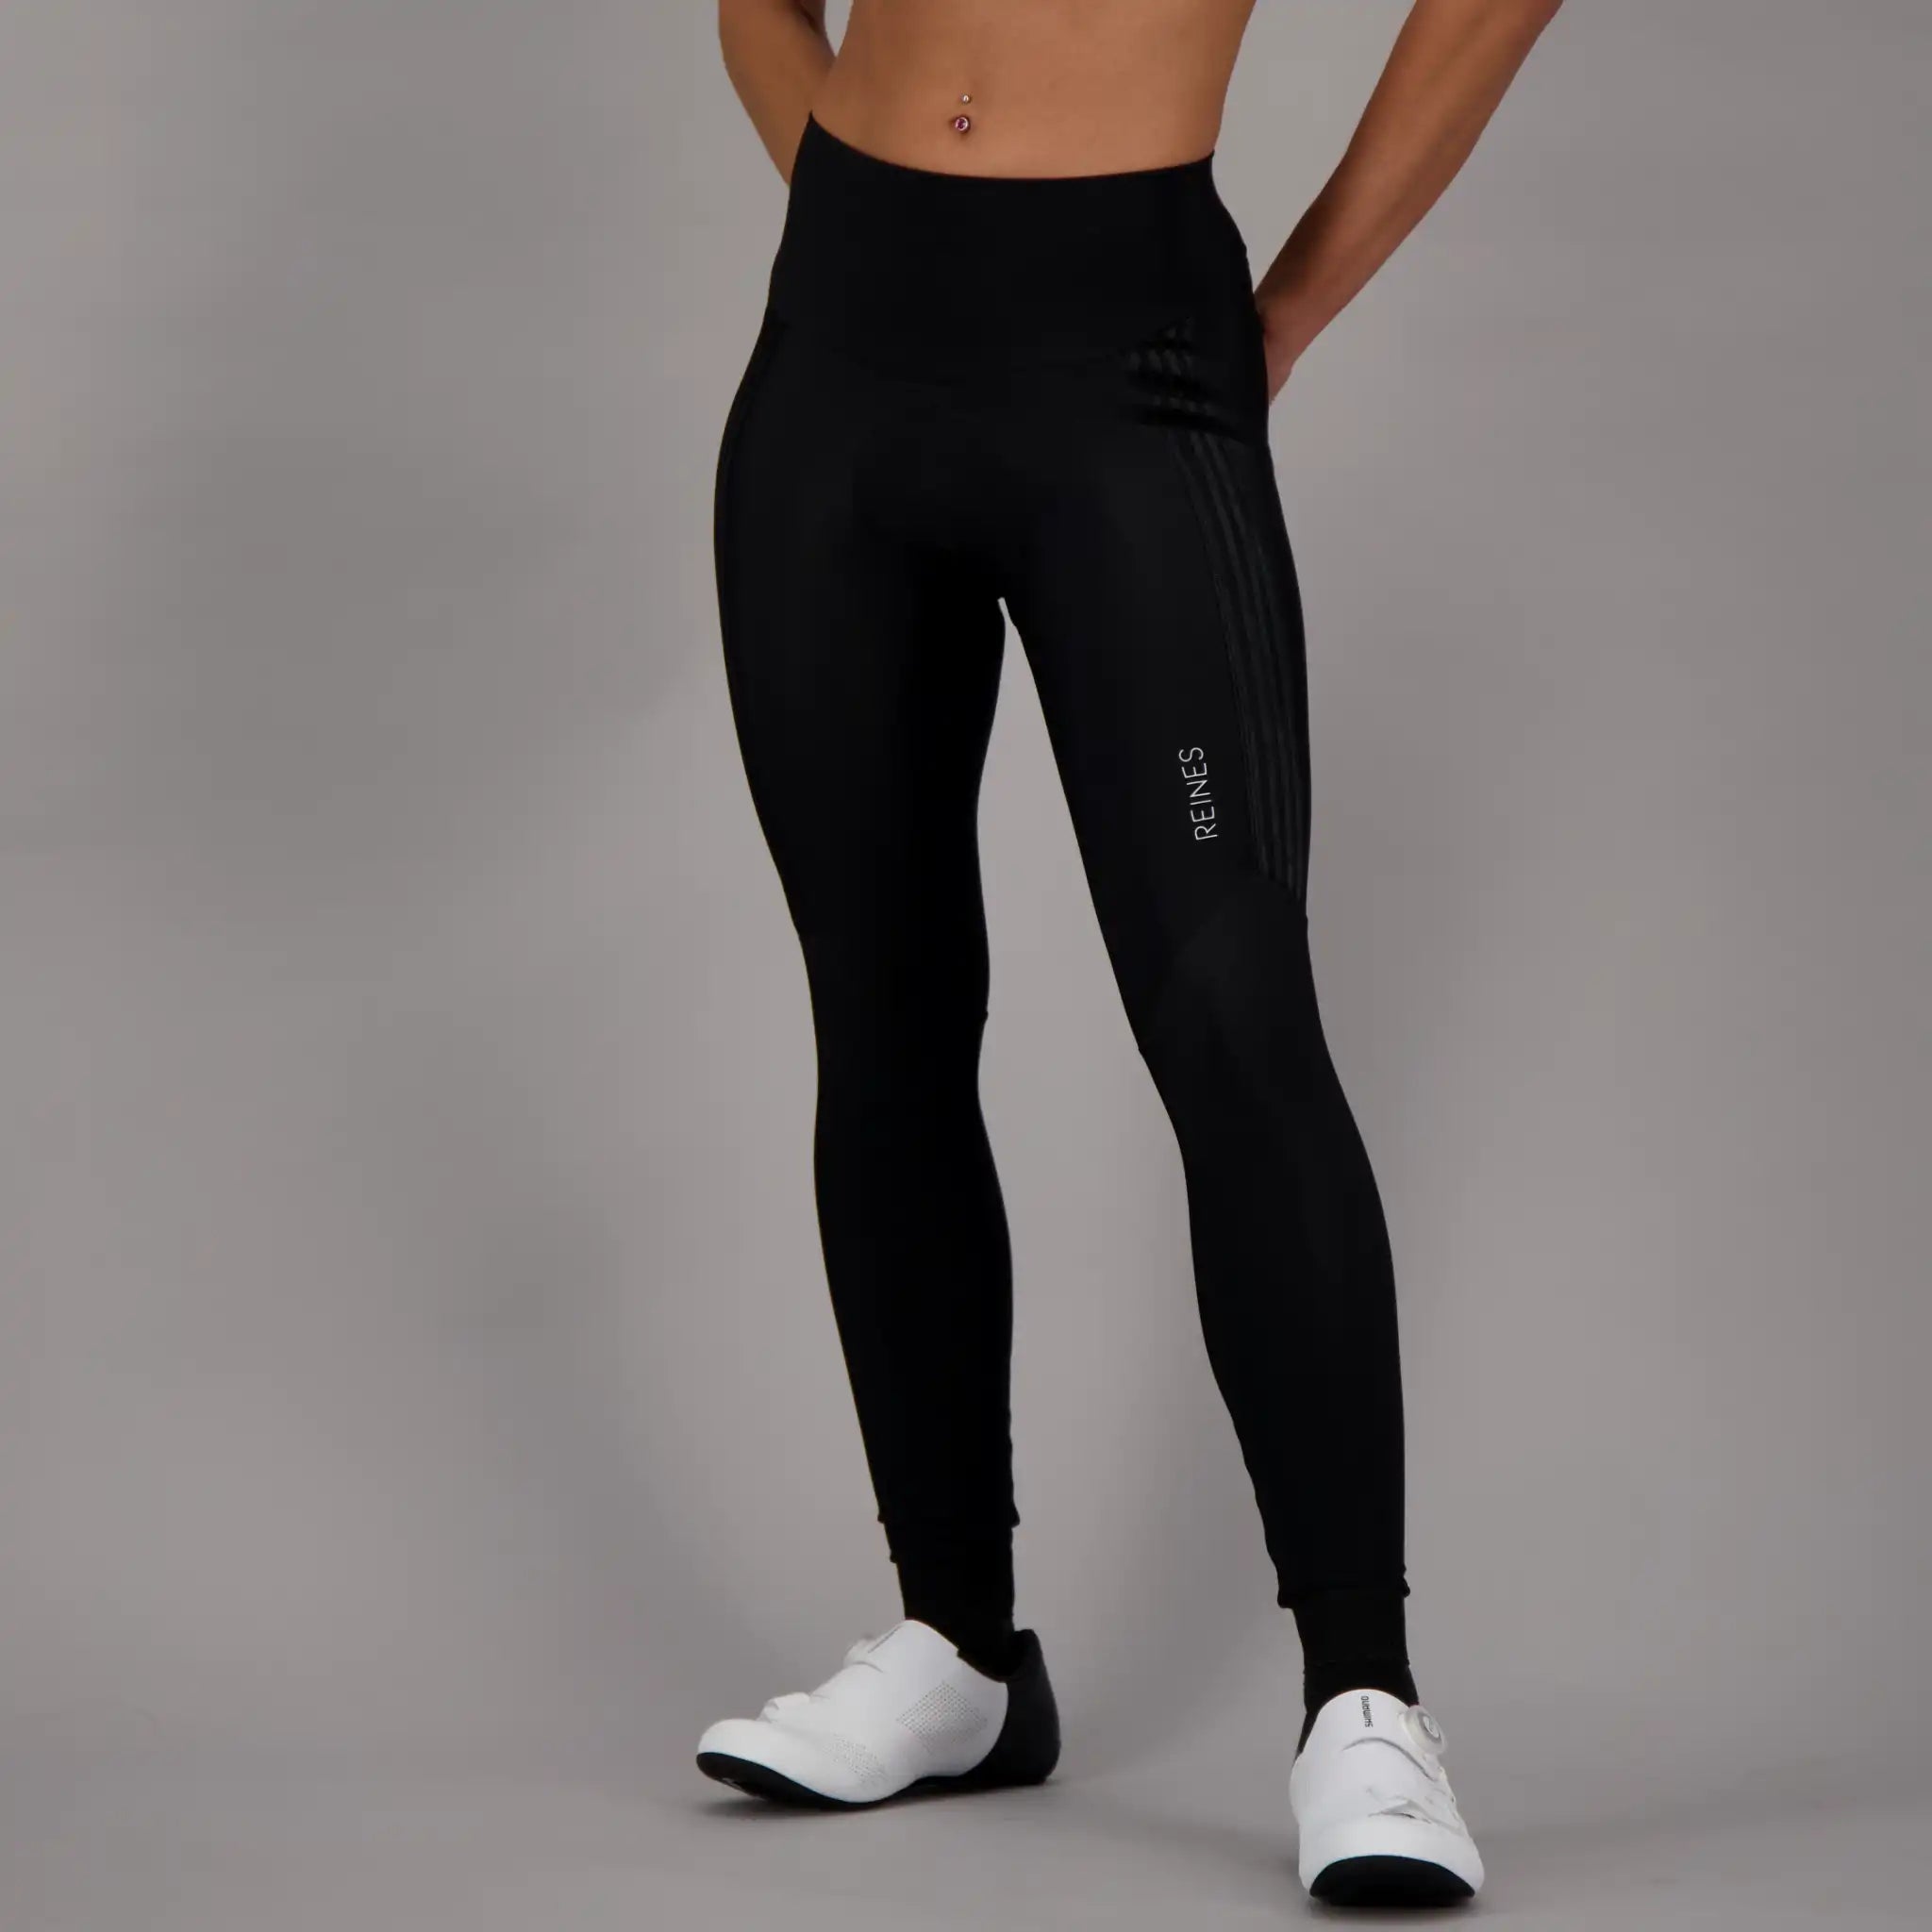 Women's Long Cycling Bib Shorts-Black Caldu